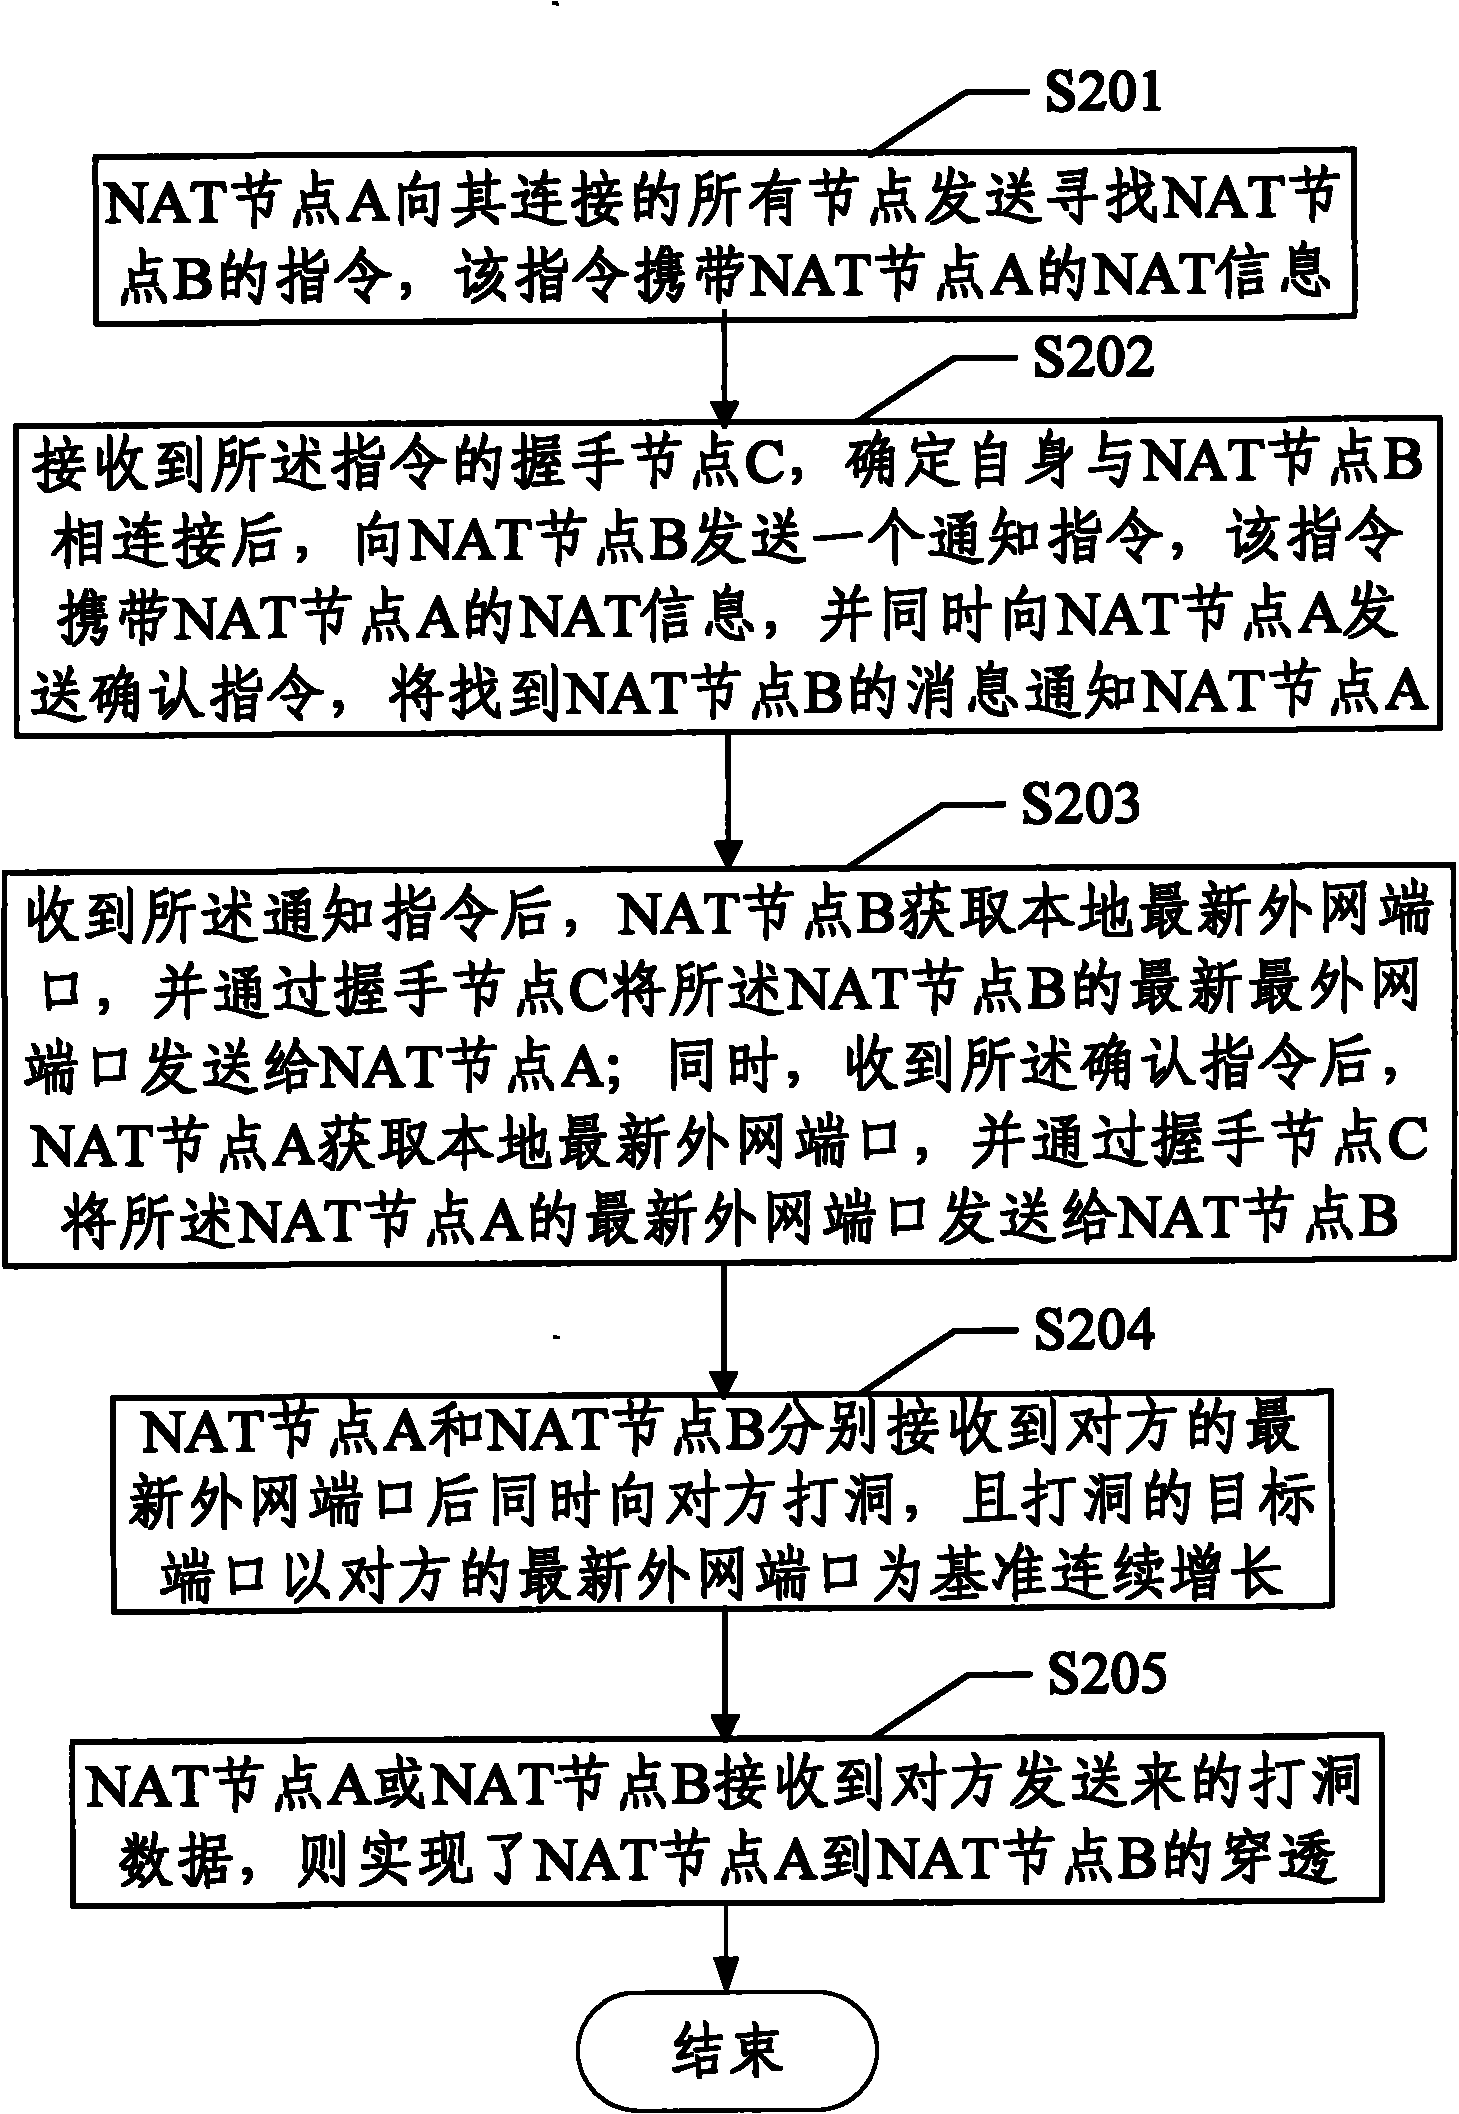 Method for penetrating NAT (Network Address Translation) equipment